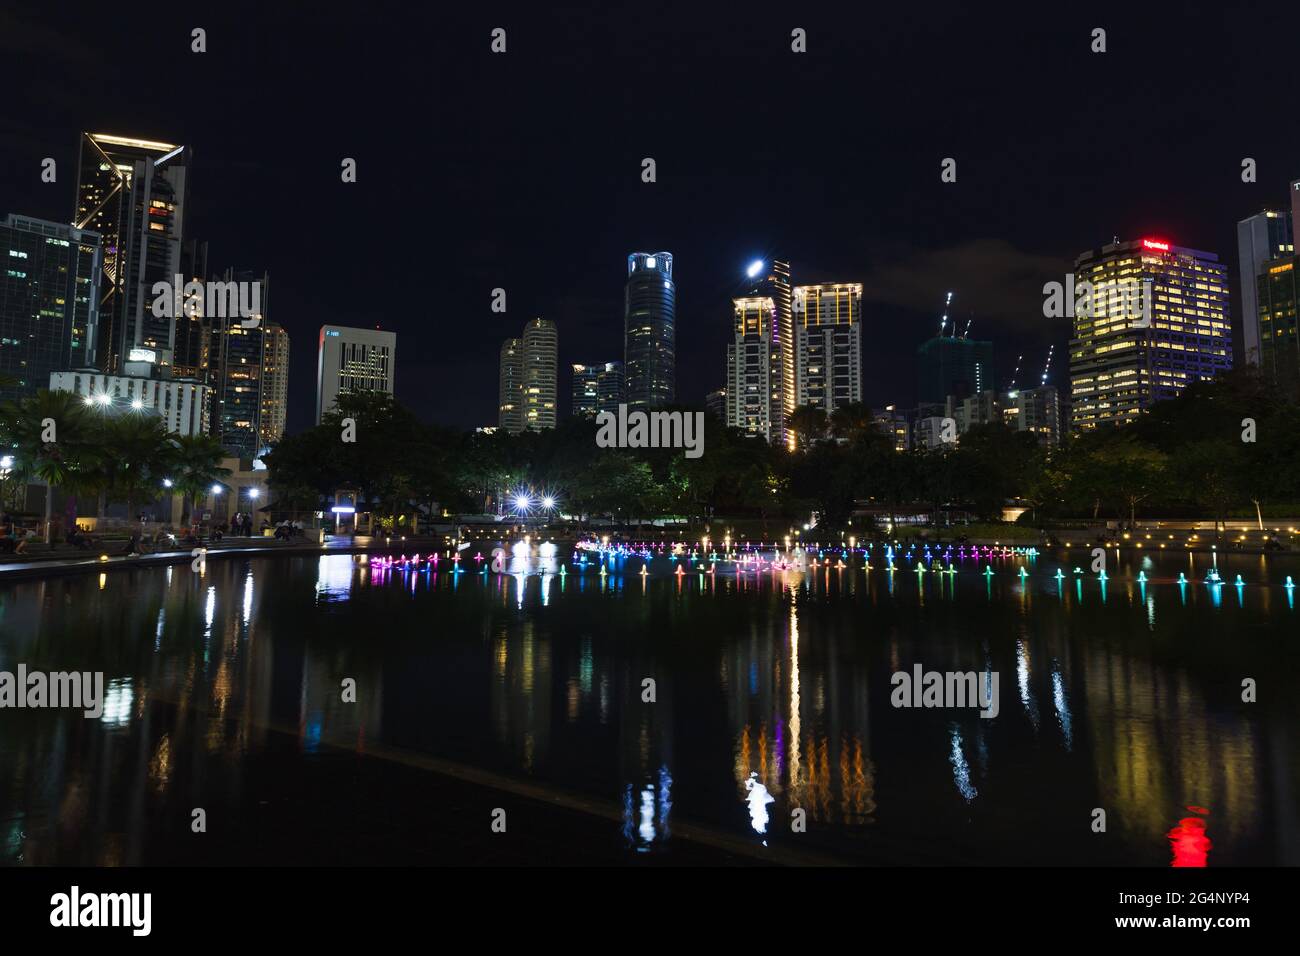 Kuala Lumpur, Malaisie - 28 novembre 2019 : vue sur le parc KLCC avec fontaine illuminée la nuit Banque D'Images